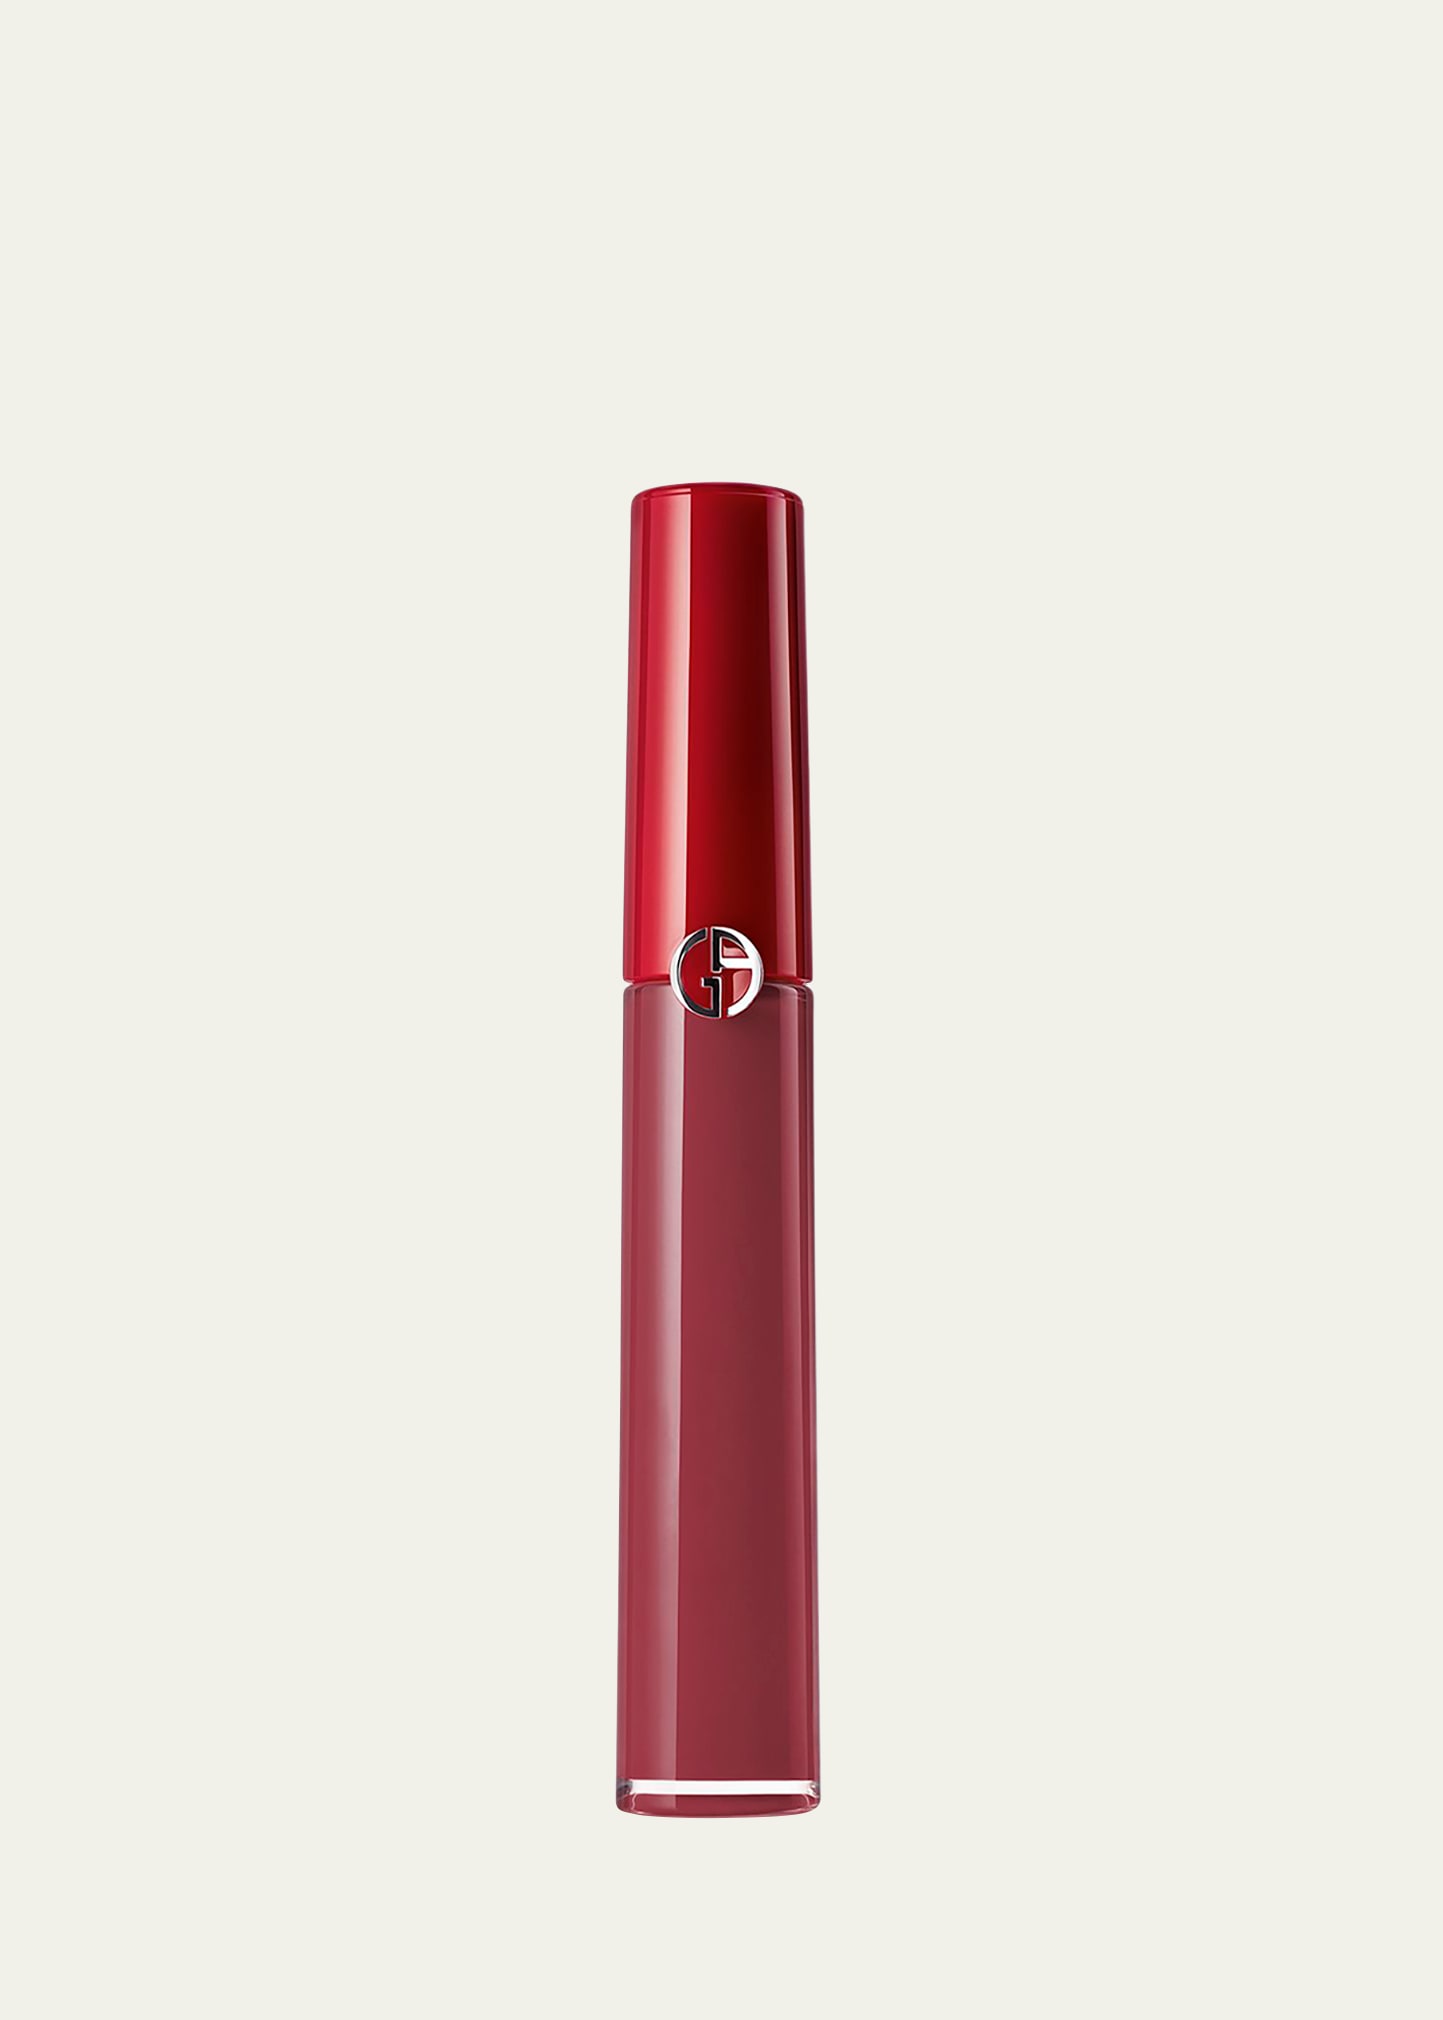 Armani Beauty Lip Maestro Liquid Lipstick In 501 Casual Pink